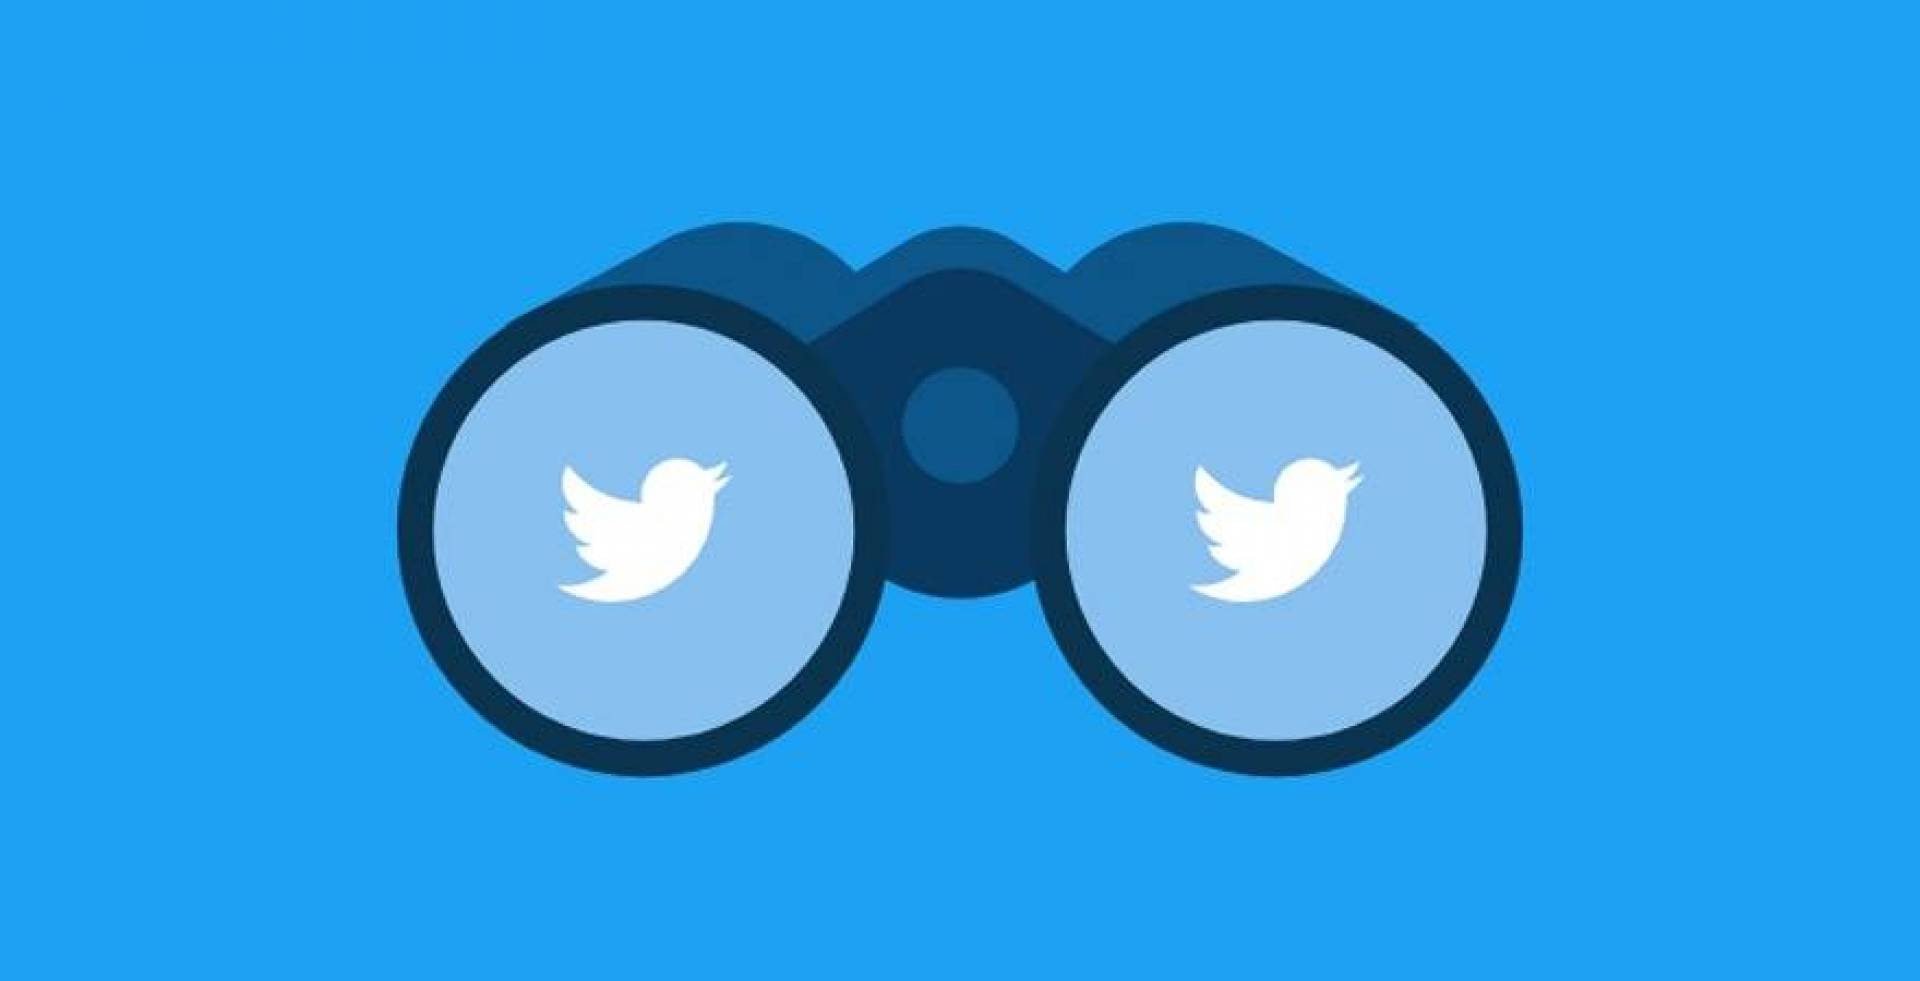 برنامج جديد لـ "تويتر" يُشرك المستخدمين في الإبلاغ عن الأخبار الزائفة